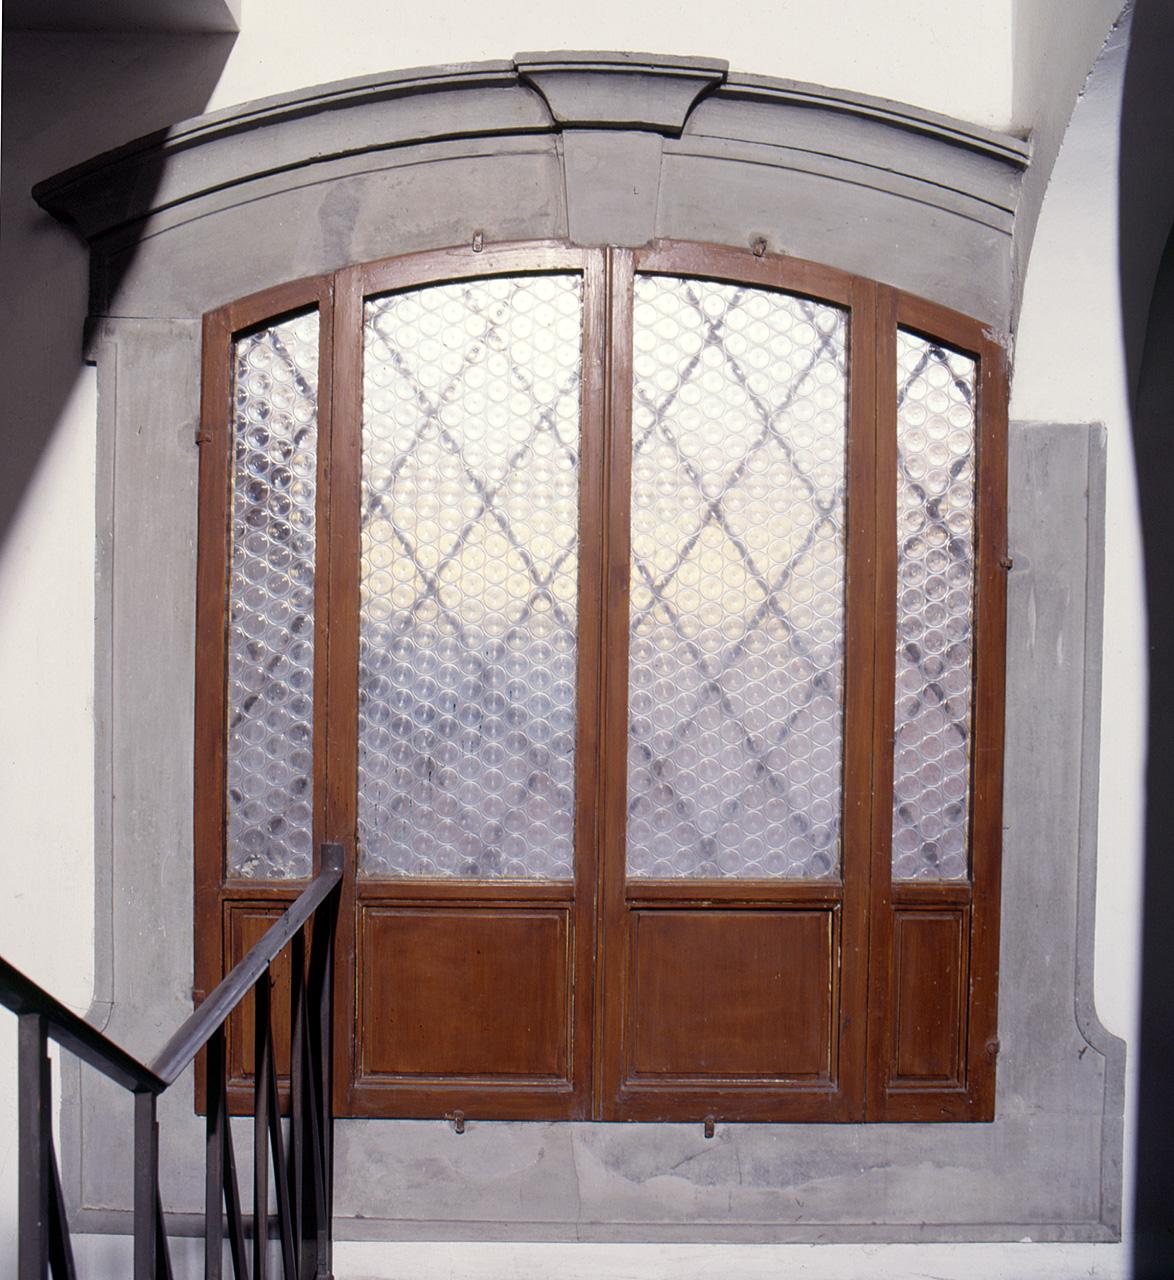 mostra di finestra - produzione fiorentina (sec. XVII)